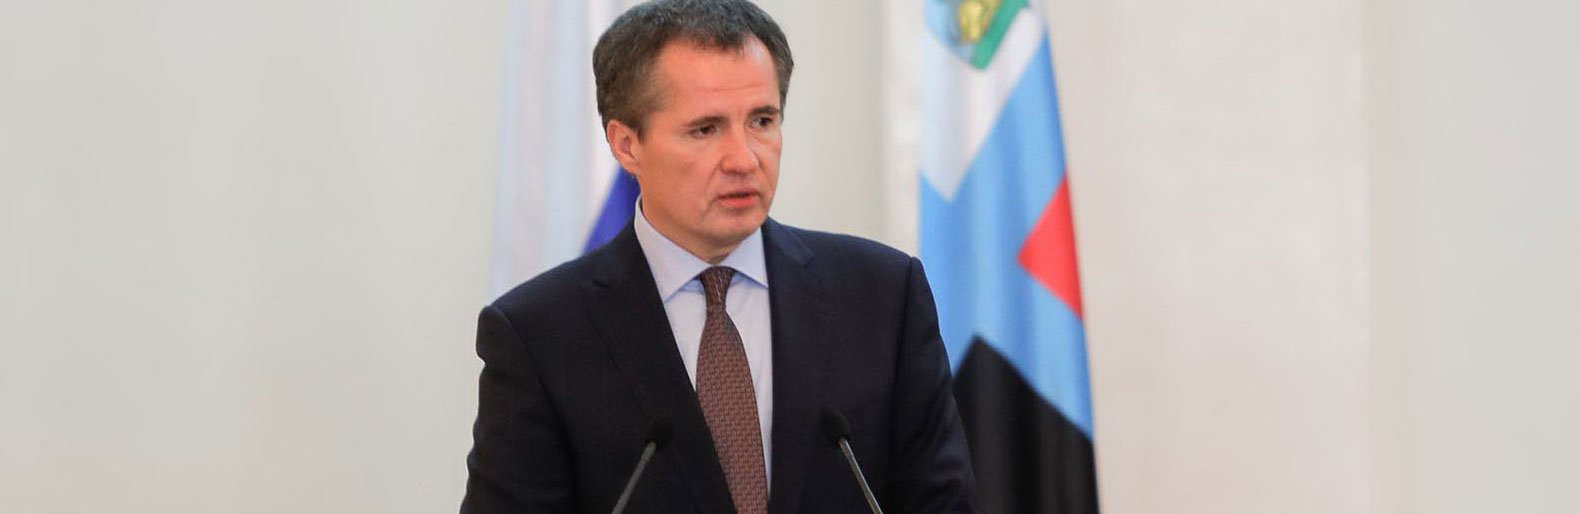 Вячеслав Гладков стал губернатором года по мнению Российской ассоциации по связям с общественностью